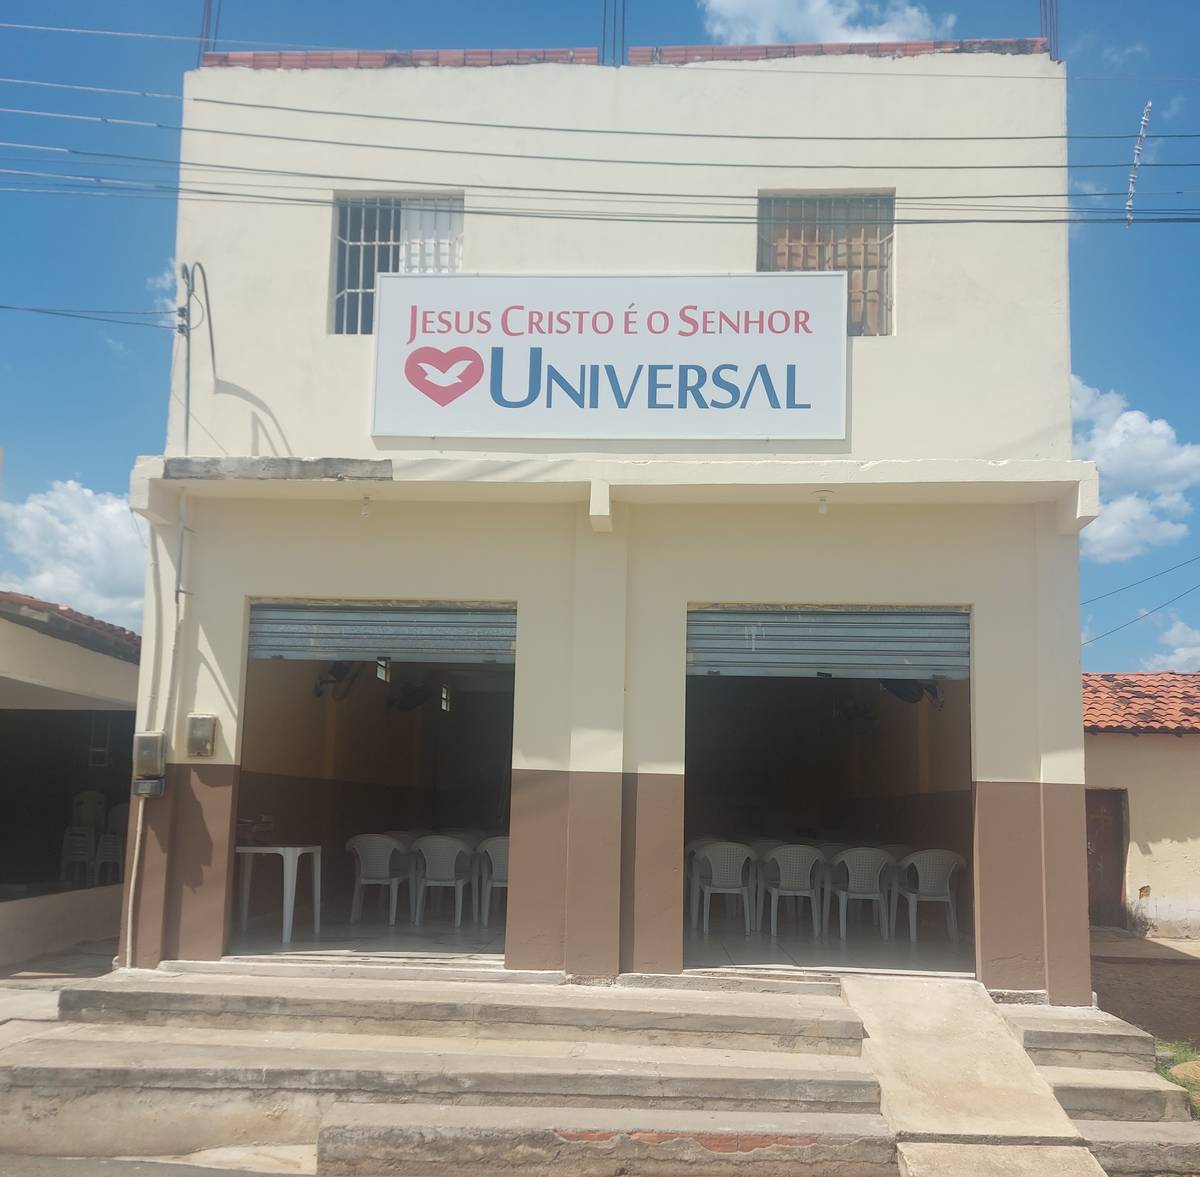 Igreja Universal SAO JOAO DA SERRA - Rua Roma  - Centro, São João da Serra - Piauí  - 64350000 - Brasil, 0 - Centro São João da Serra - Piauí - Brasil